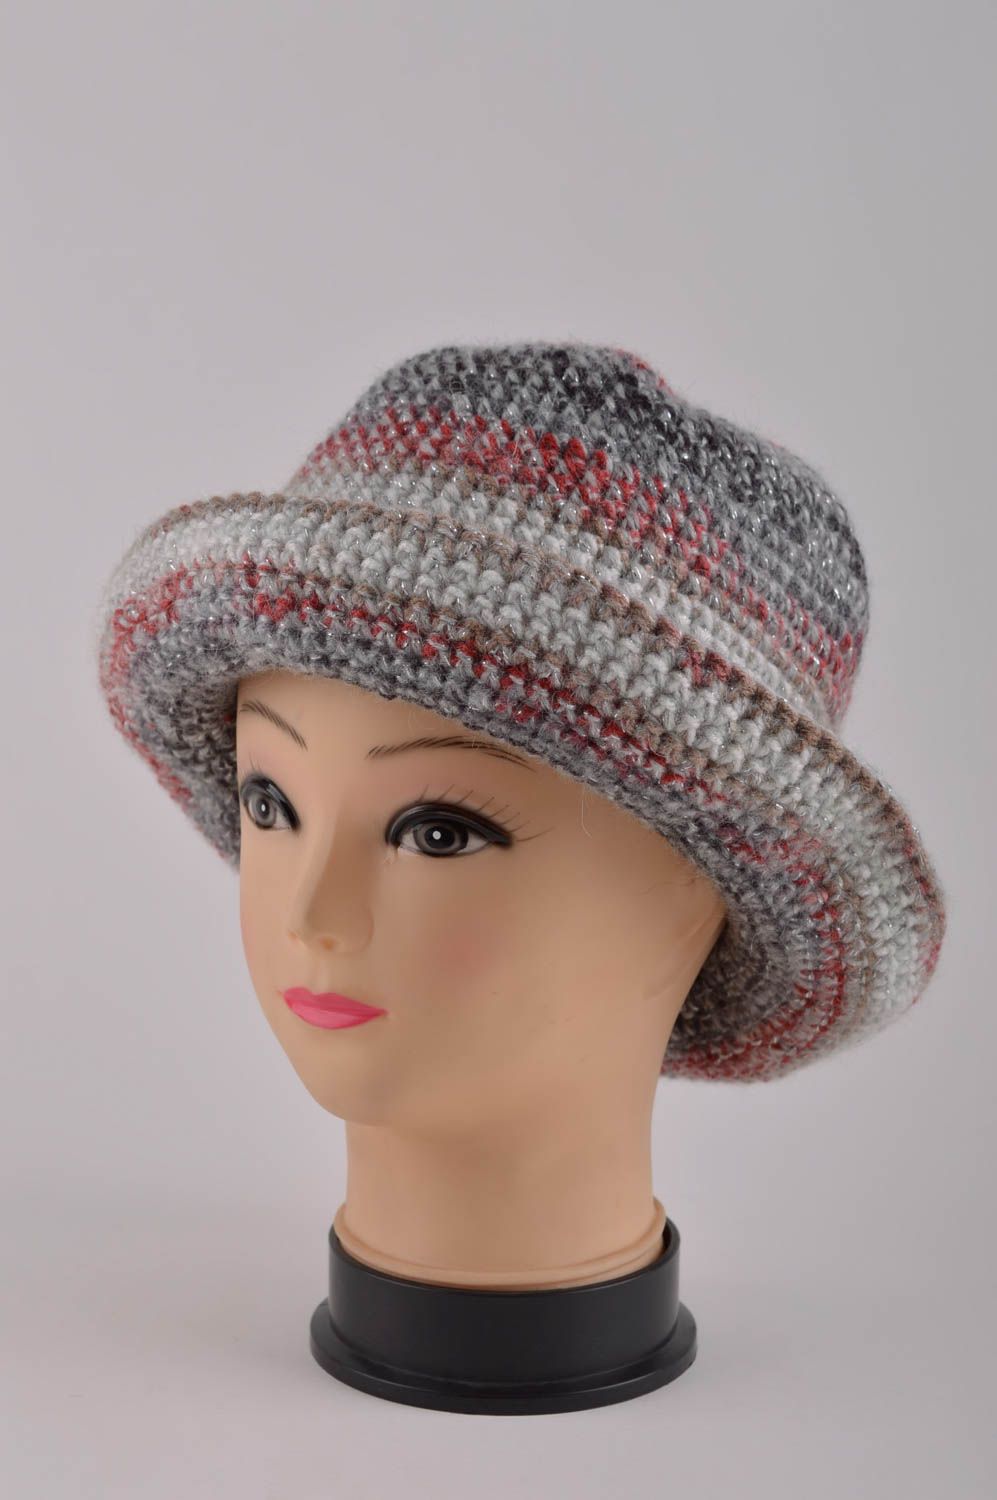 Designer hat fashion accessories for women ladies hat handmade crochet hat photo 2